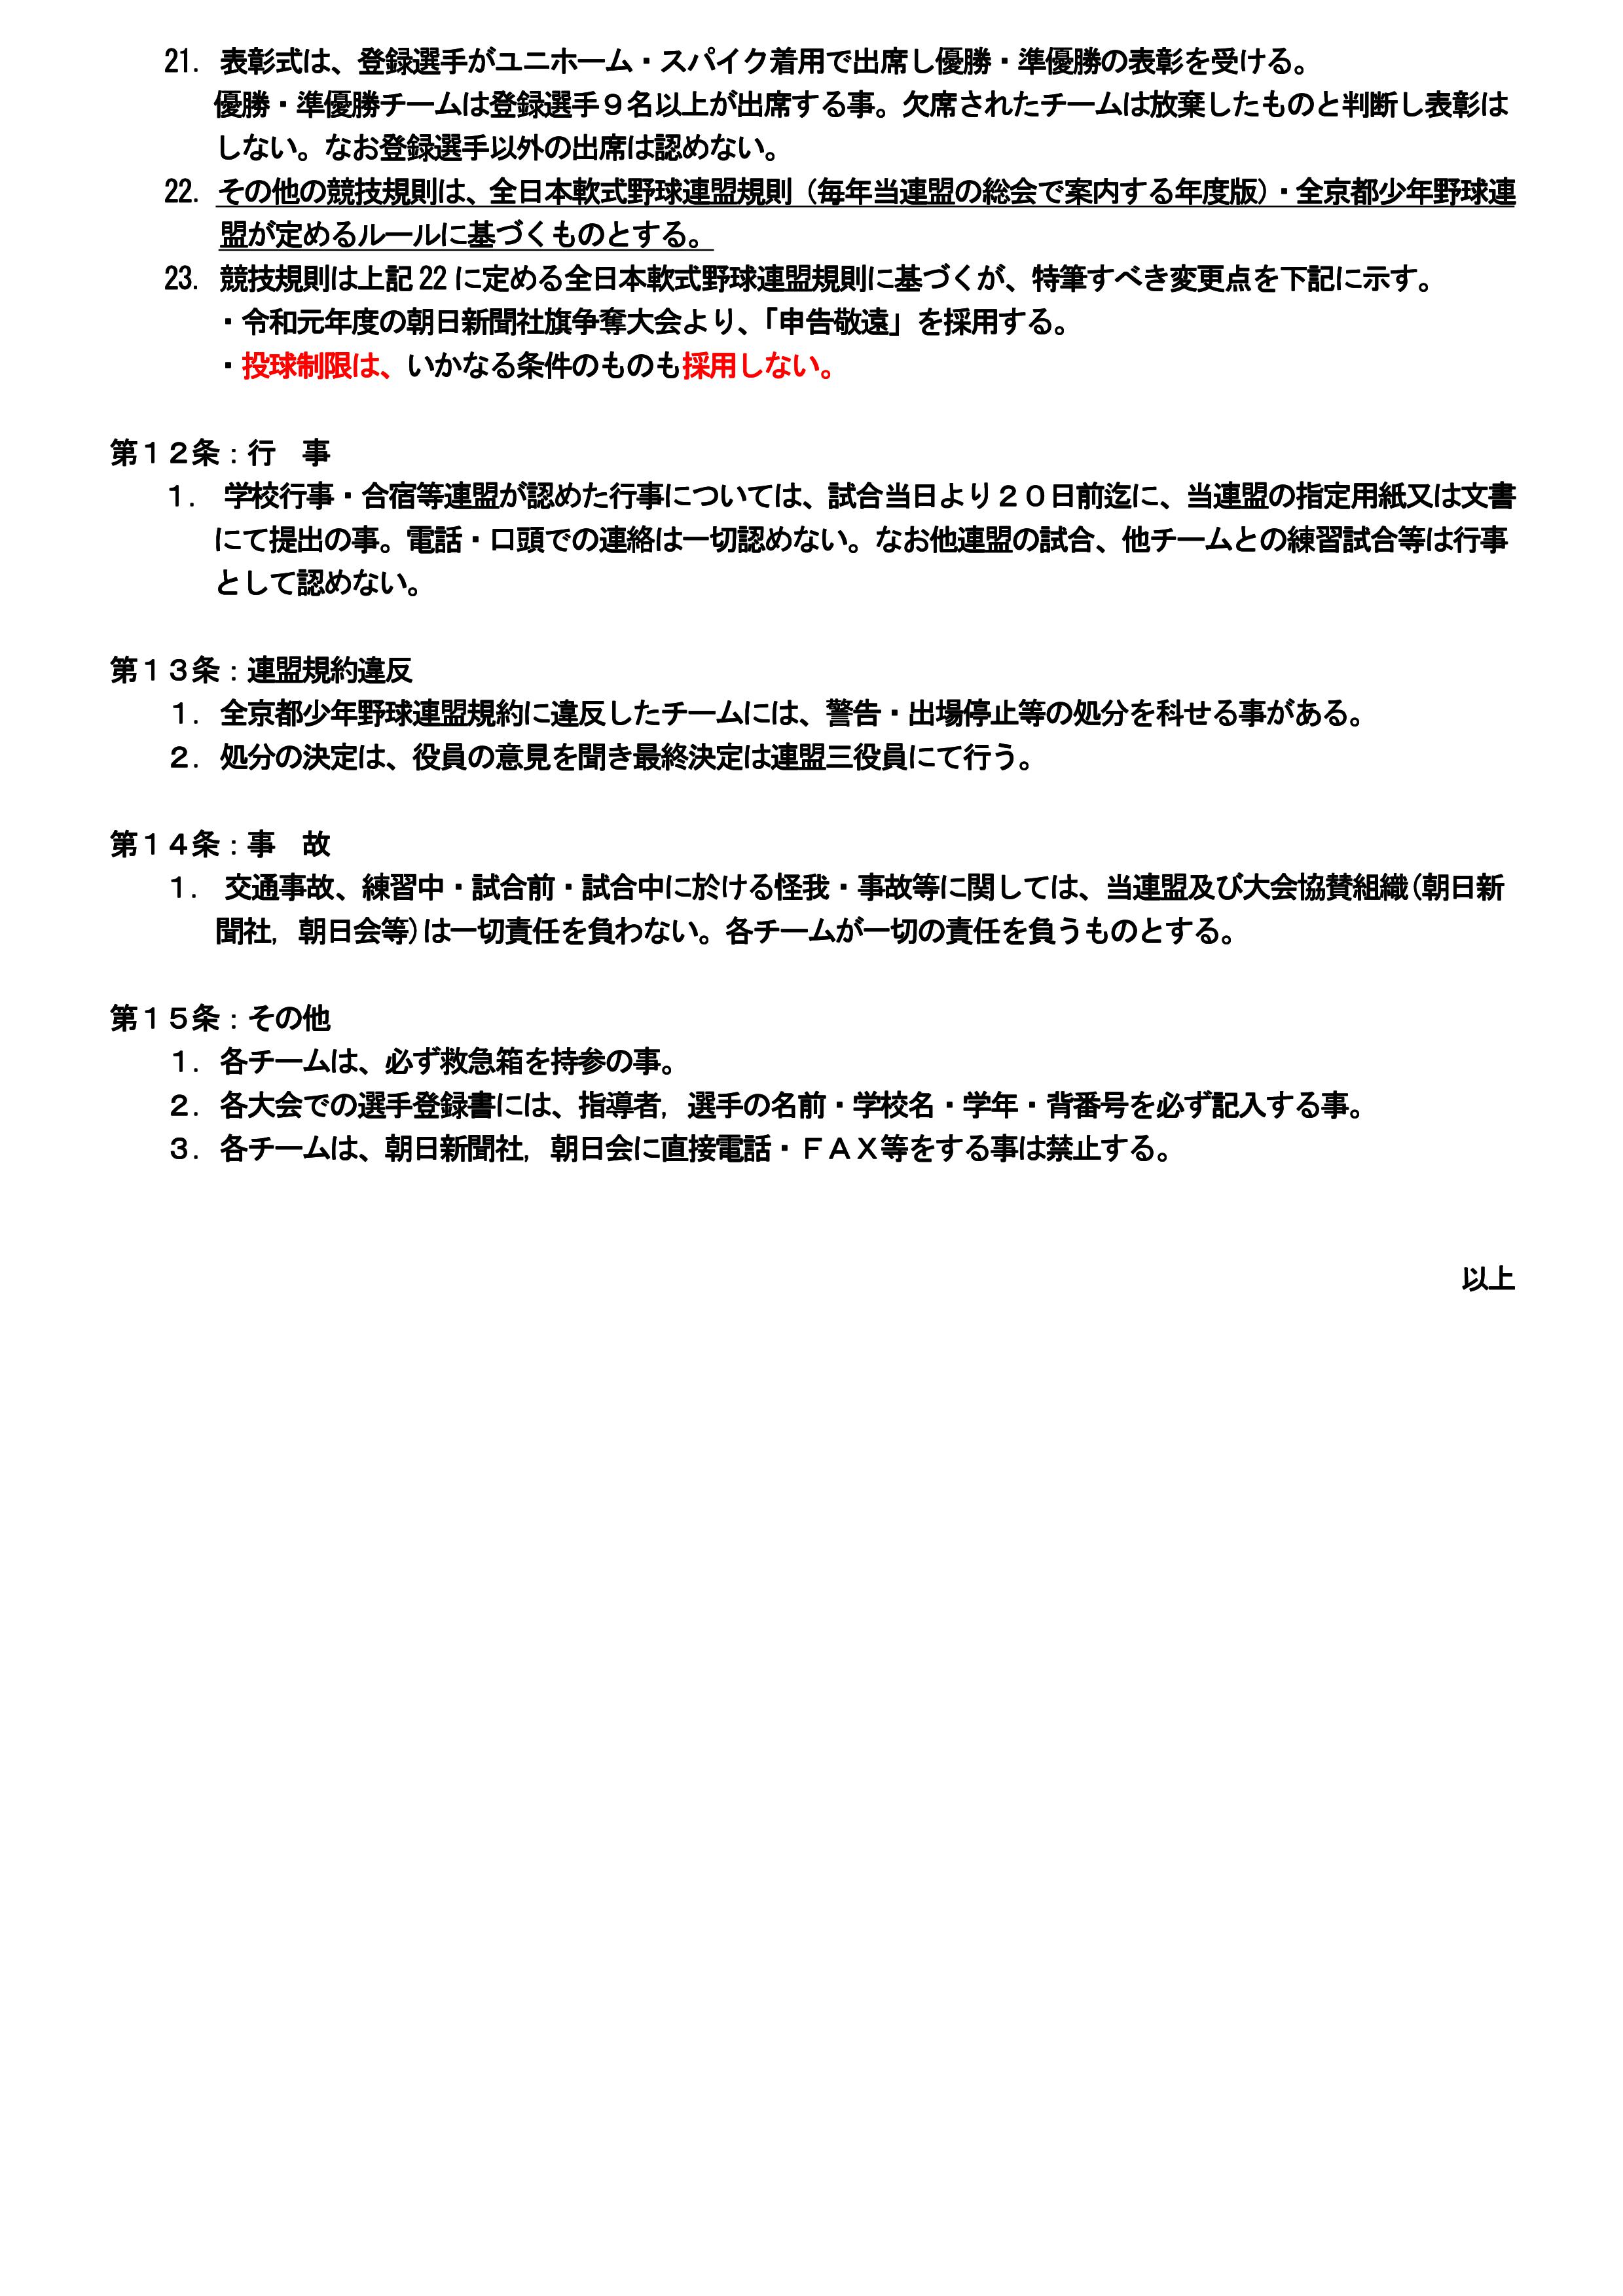 全京都少年野球連盟規約　2020.01.01改訂(案)-04.jpg